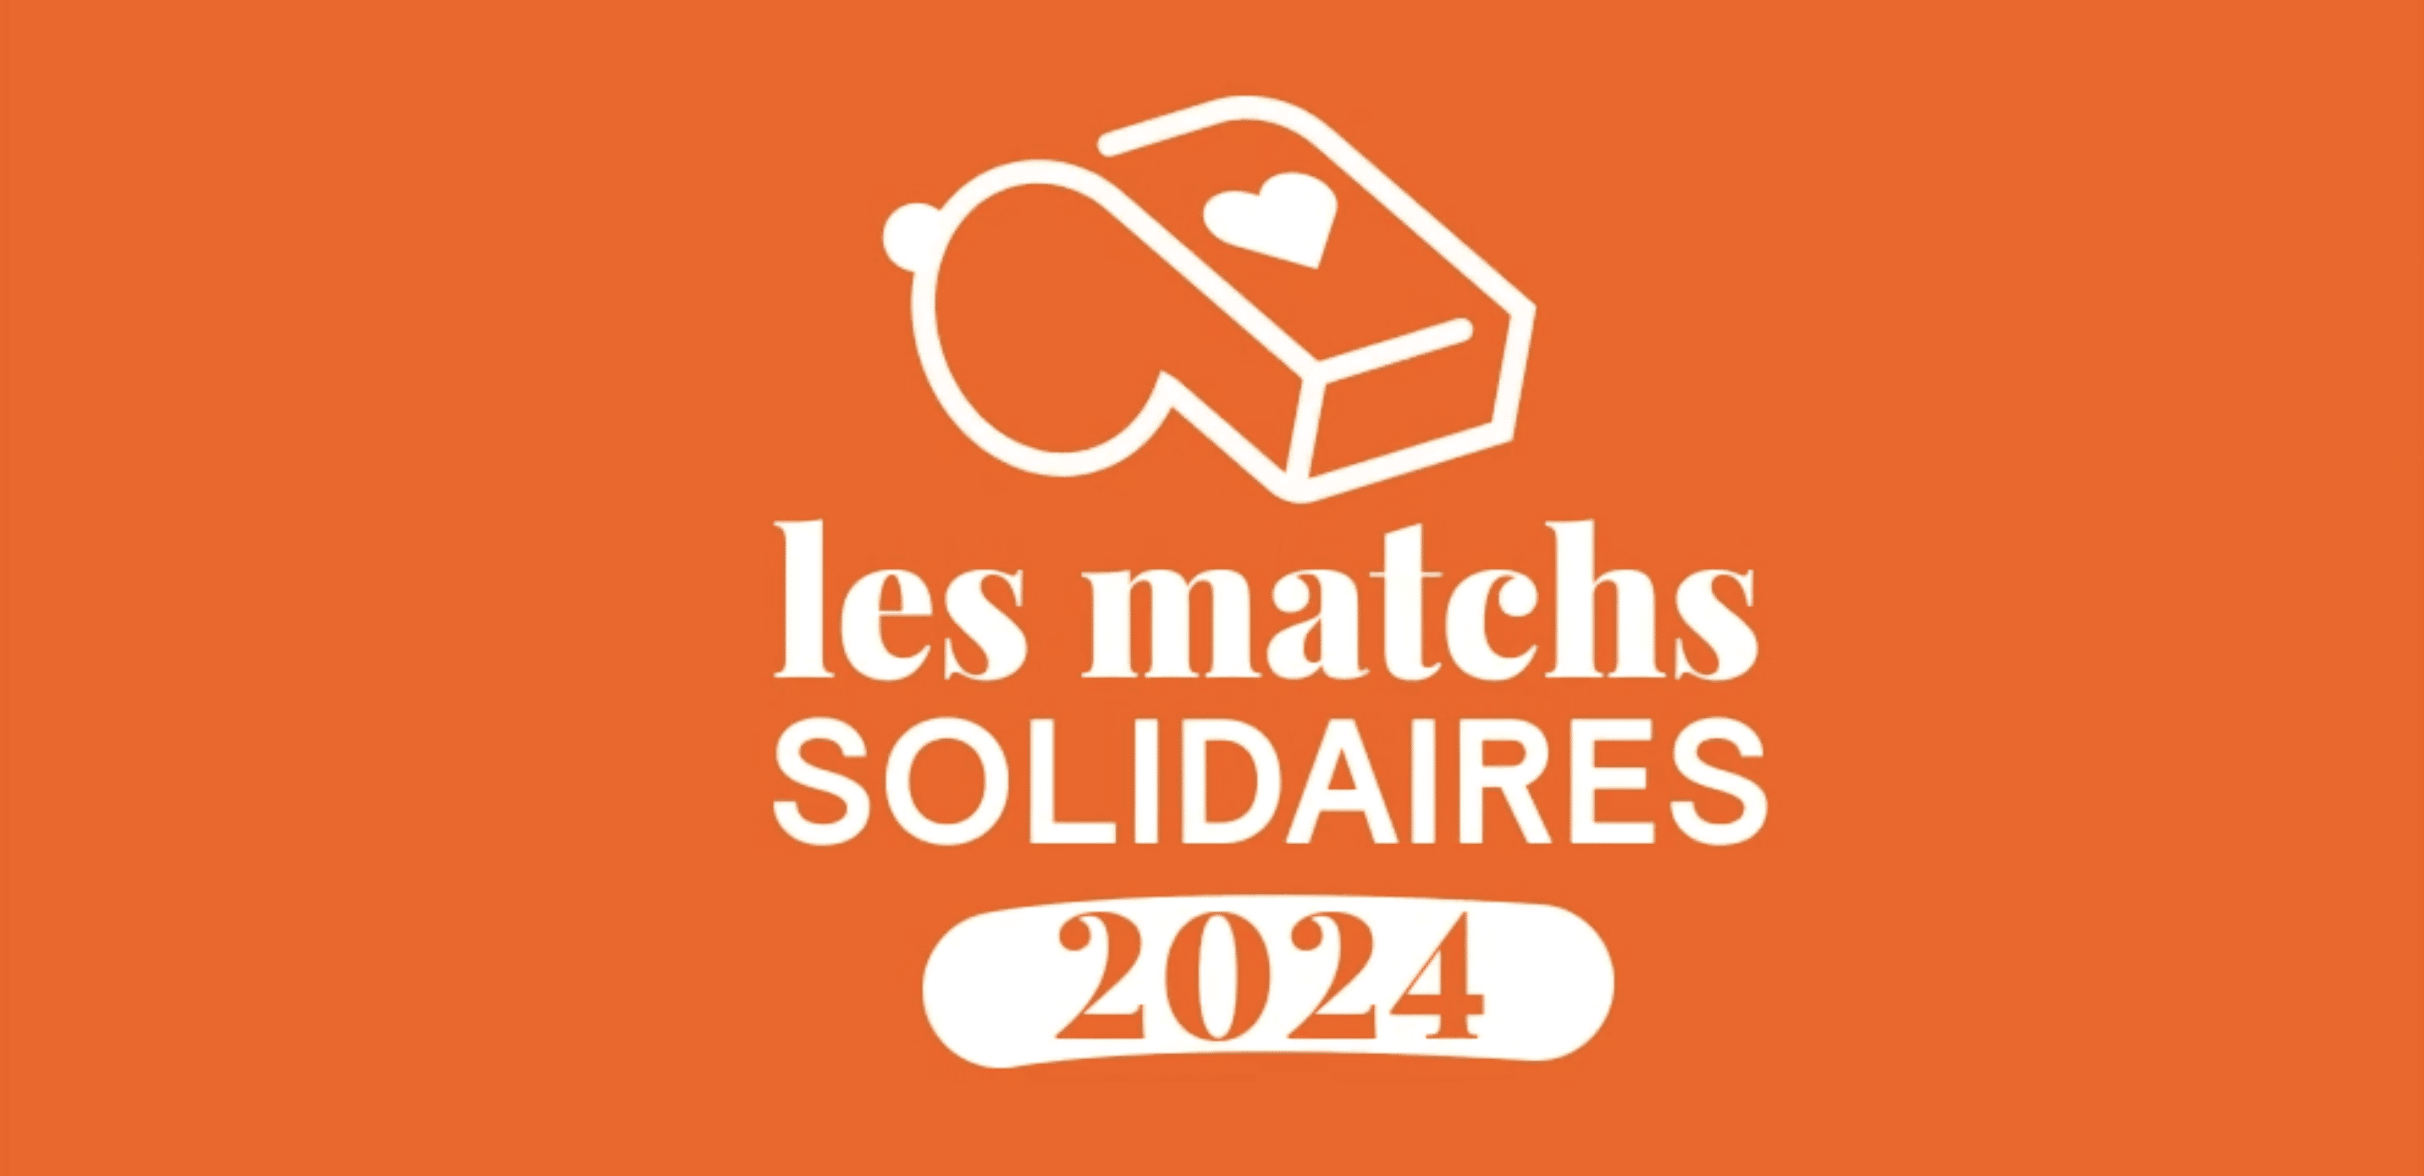 La saison 2024 des matchs solidaires de Viasanté Mutuelle est lancée !